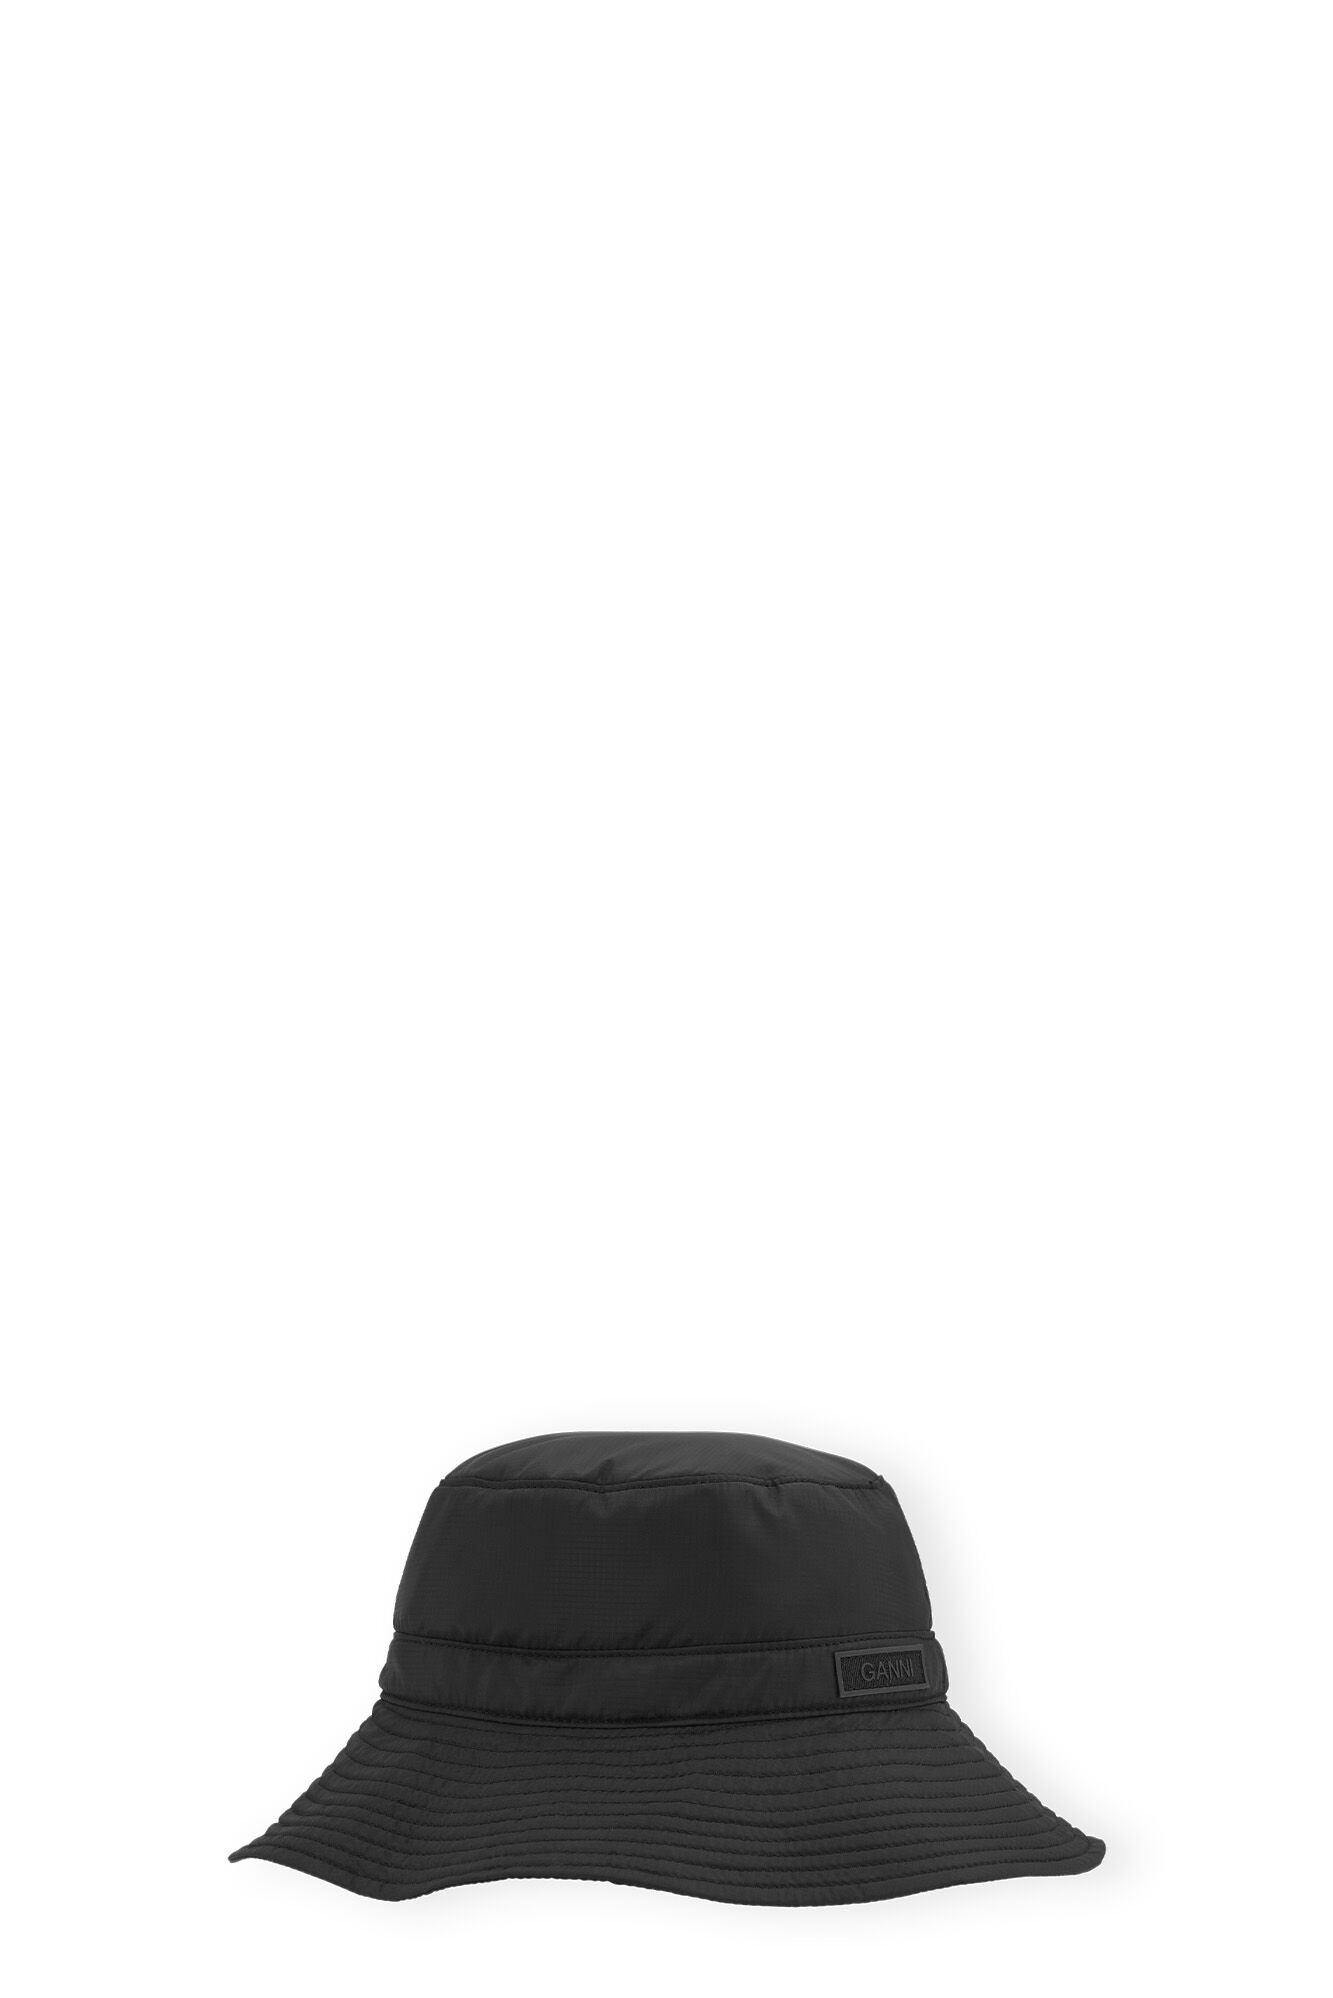 BLACK TECH BUCKET HAT - 1